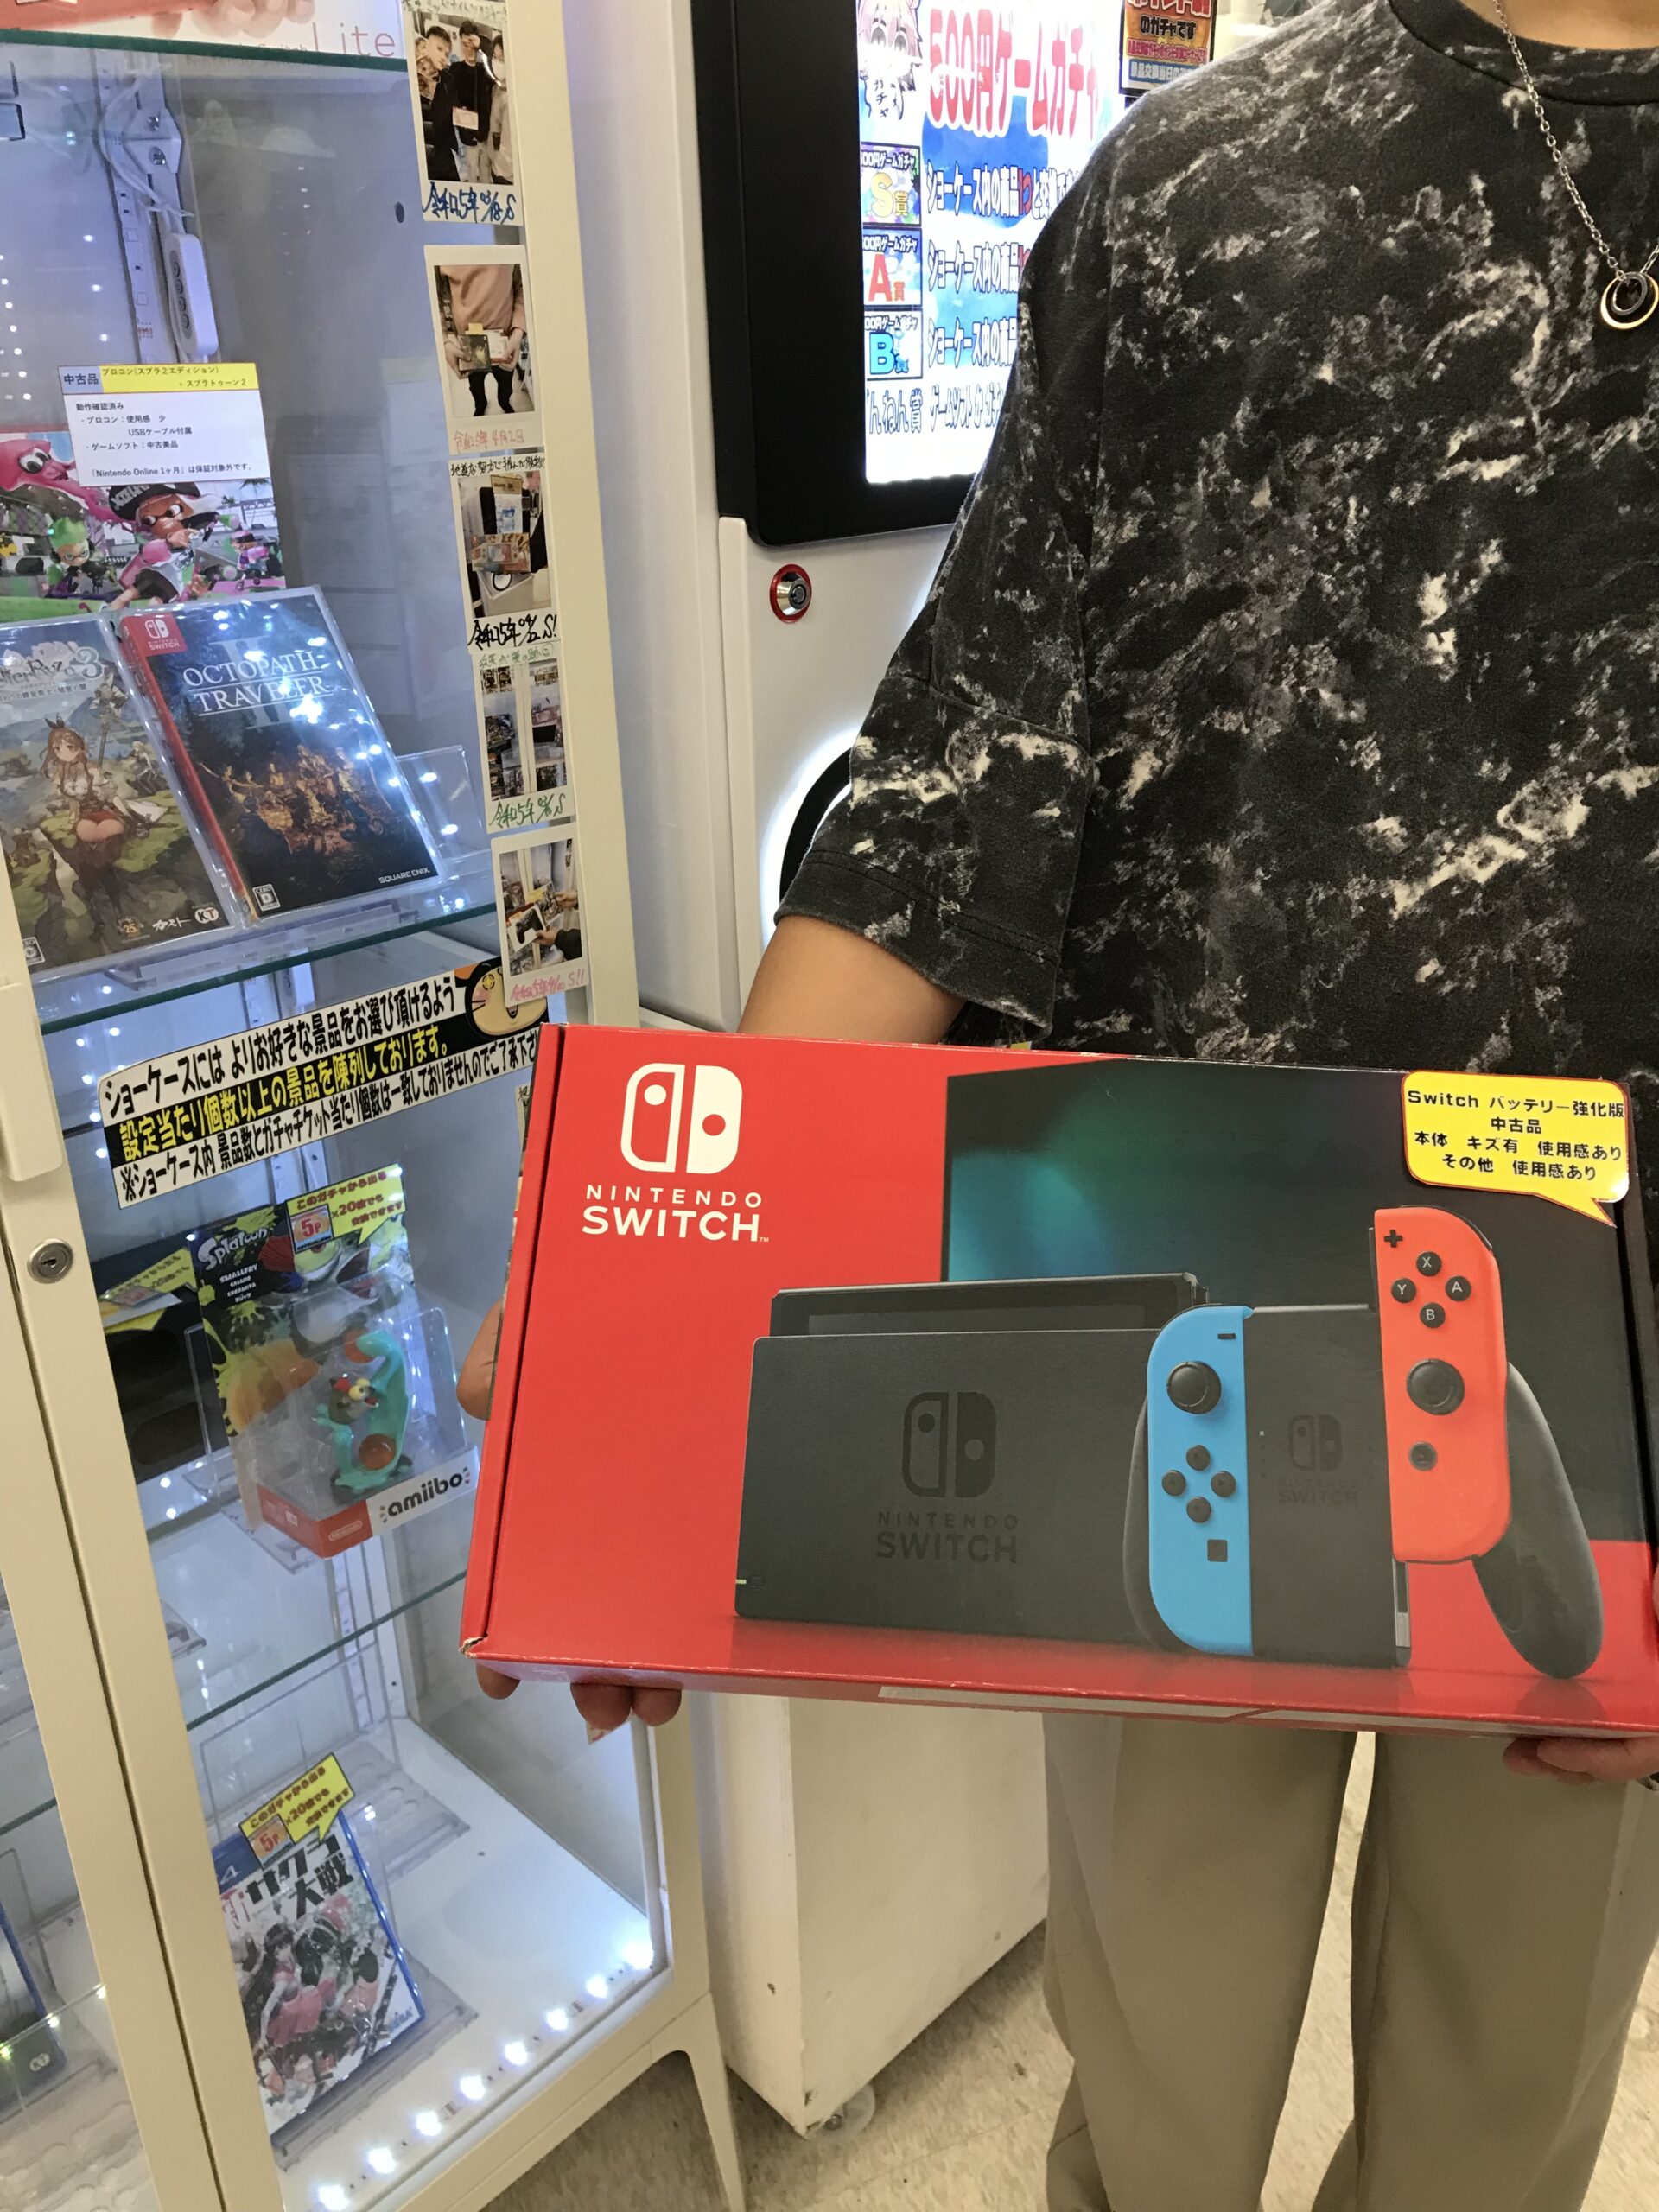 ゲーム500円ガチャS賞【Nintendo Switch(中古)】GET✨✨ おめでとう